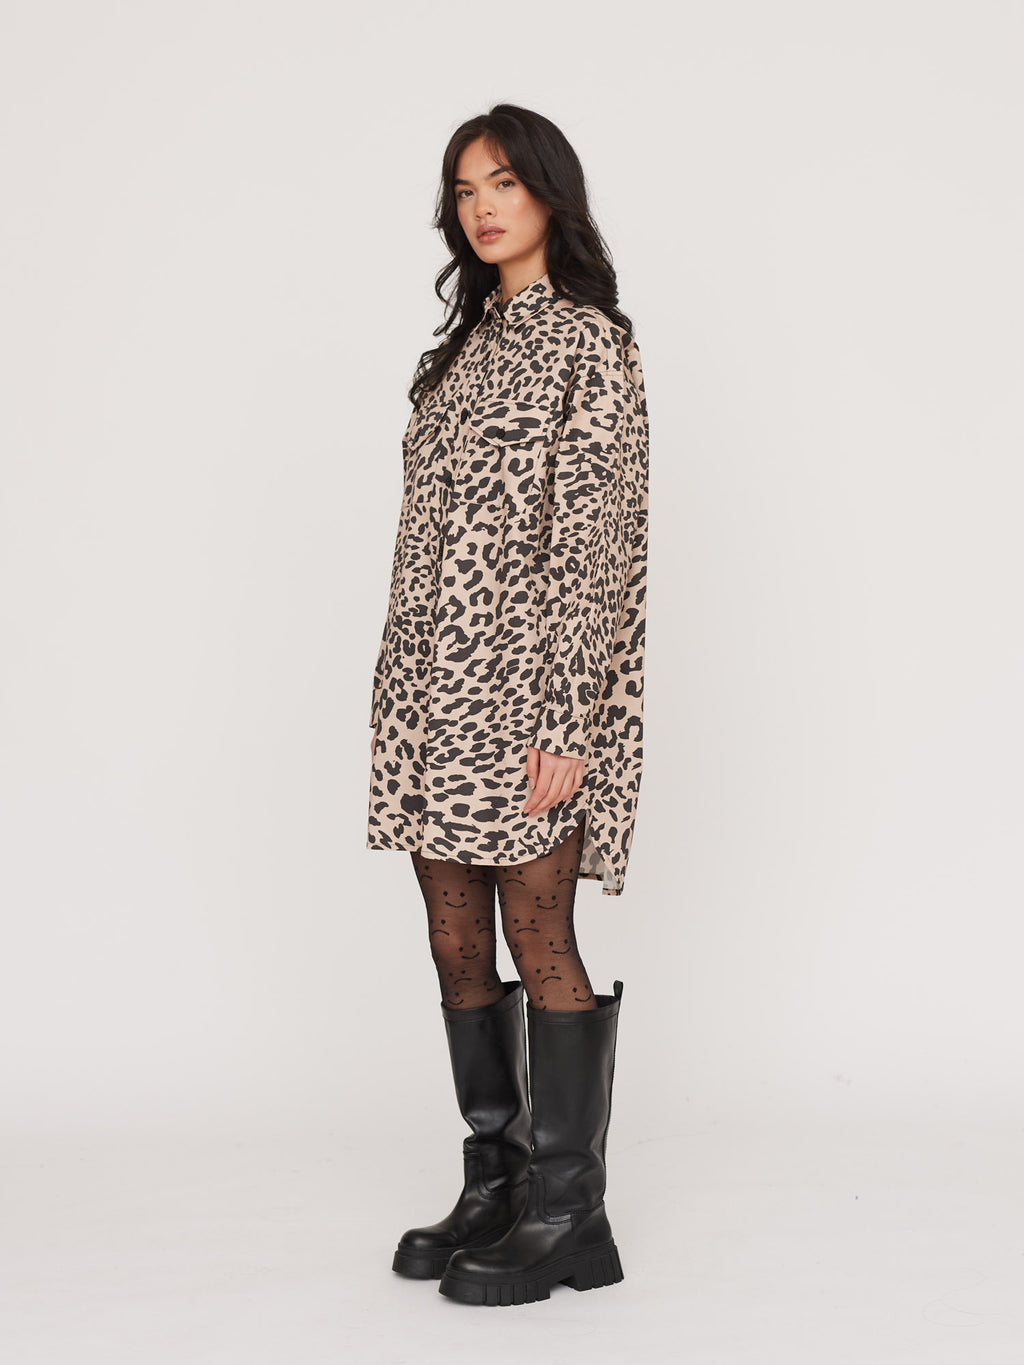 Outfit Leopard Mini Skirt Fishnet Tights 5-min